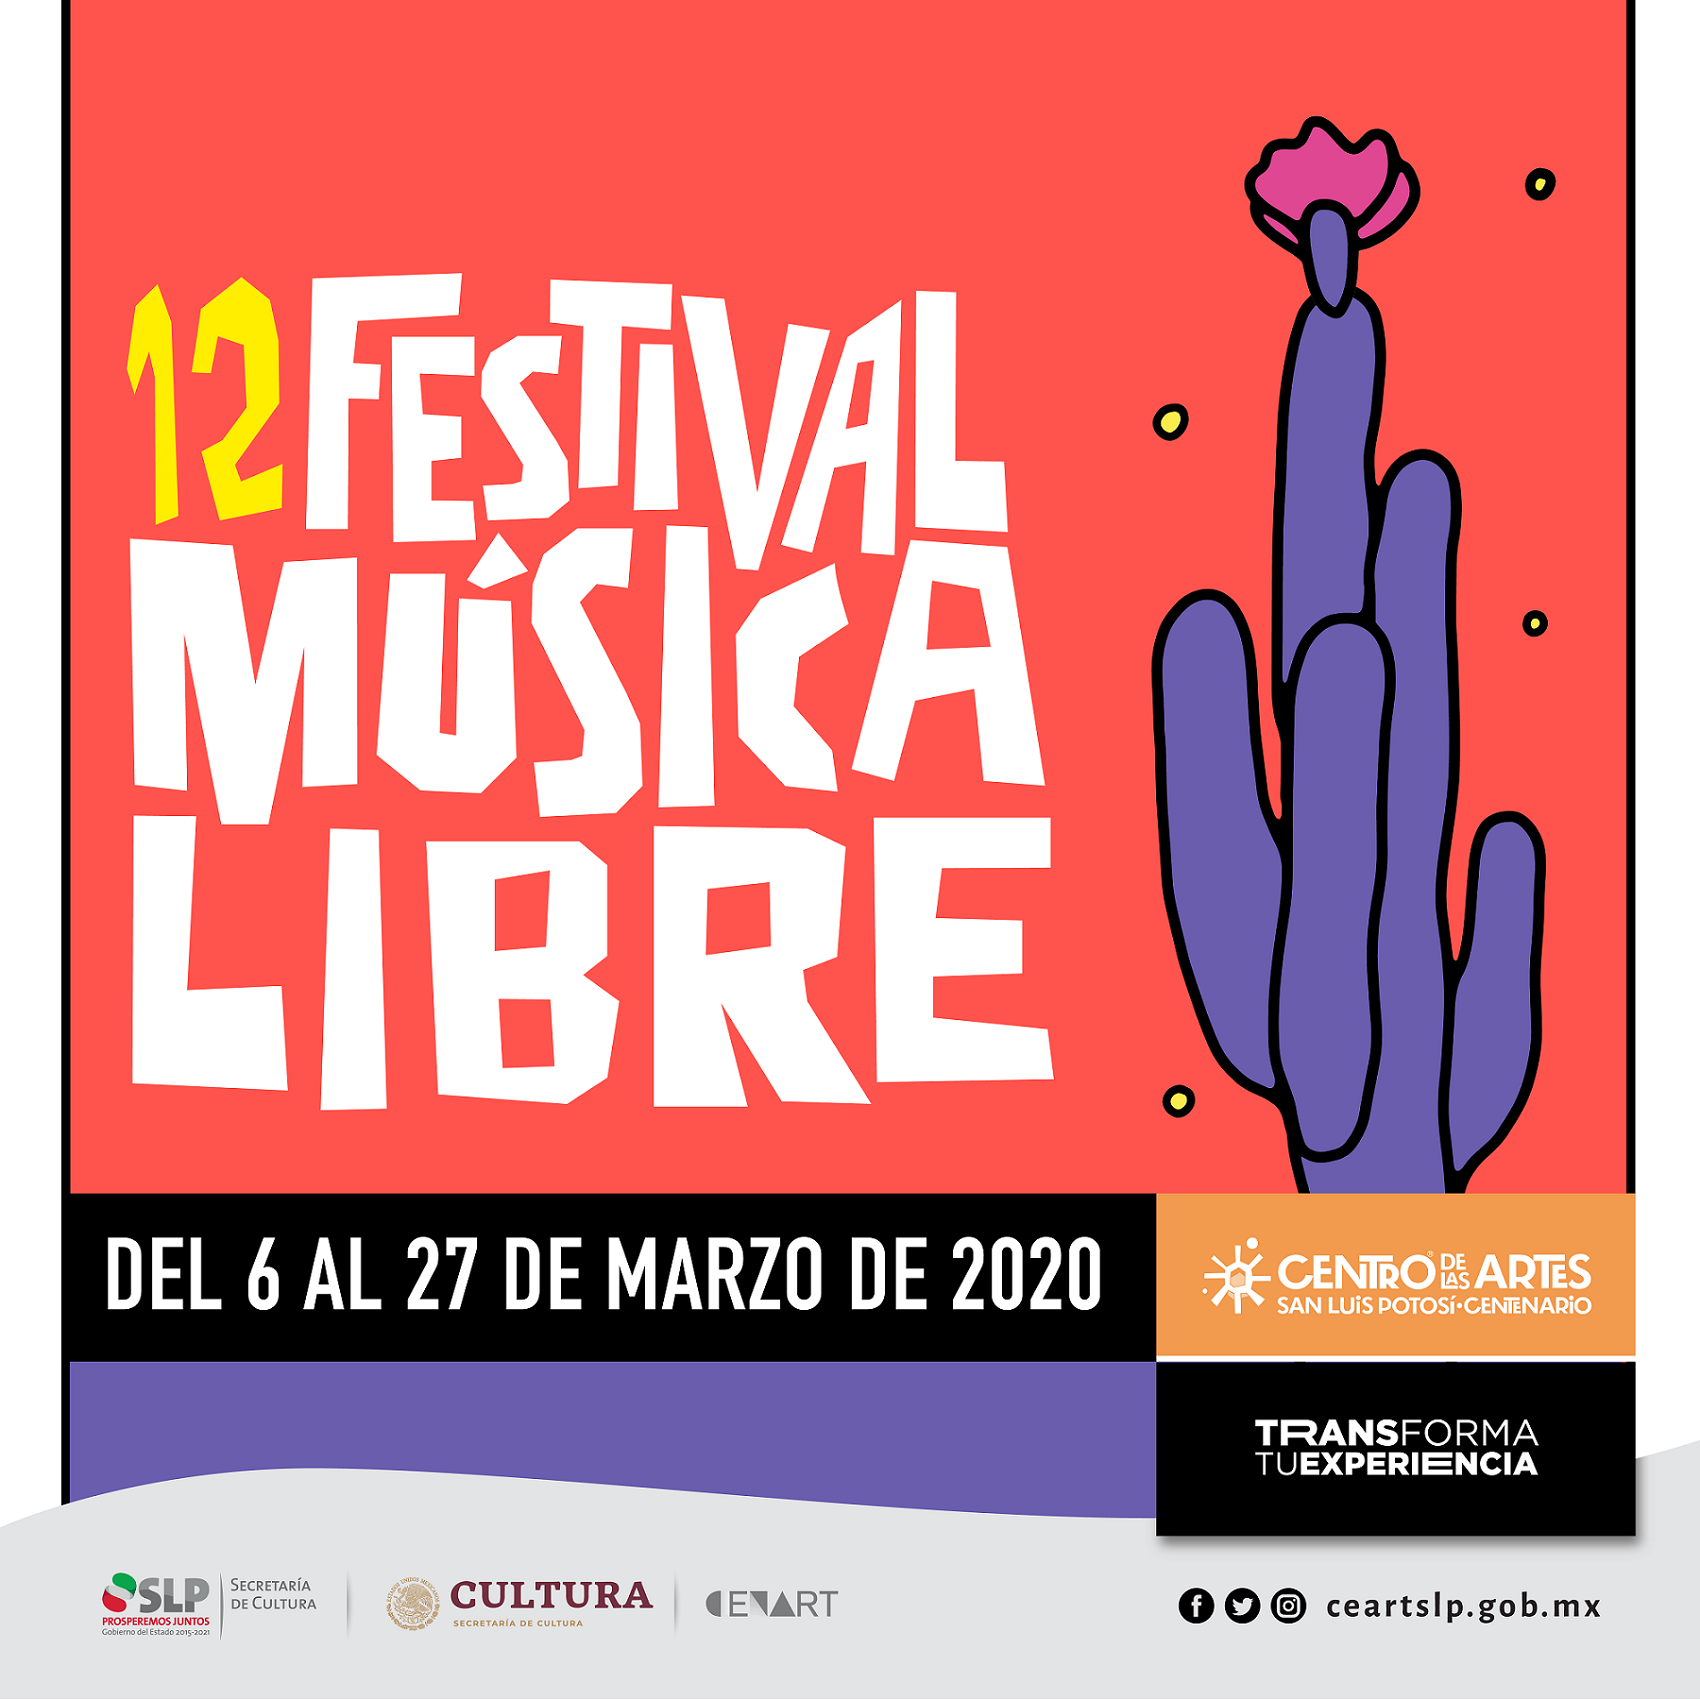 12° Festival de Música Libre de San Luis Potosí reúne a artistas locales, nacionales e internacionales